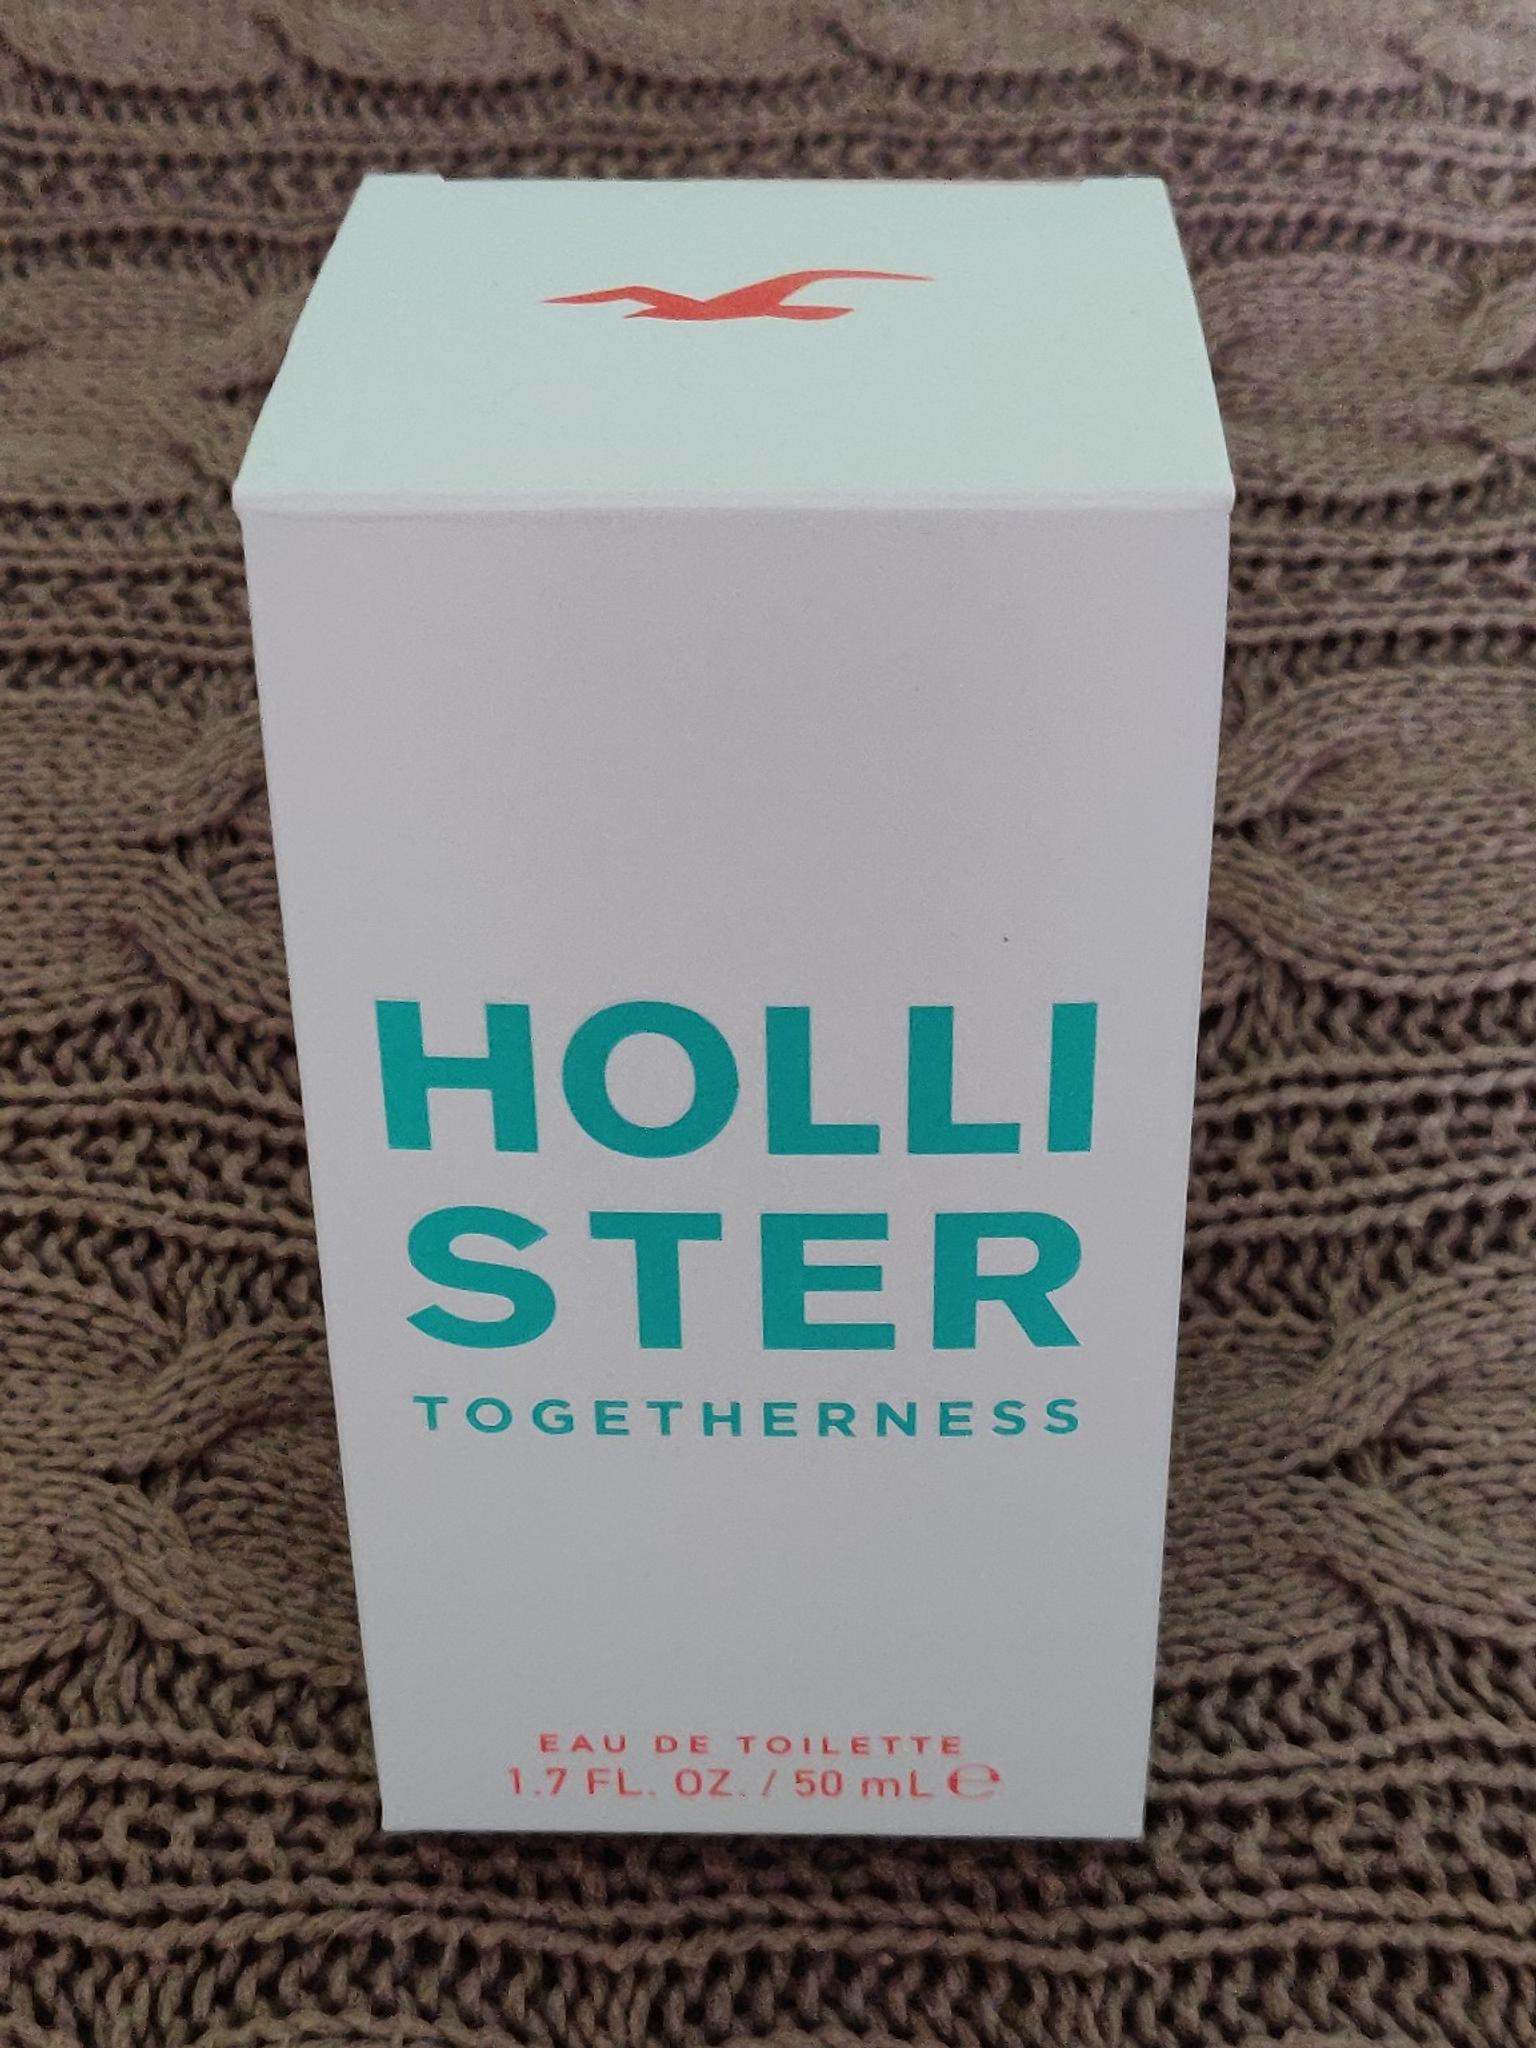 hollister togetherness cologne